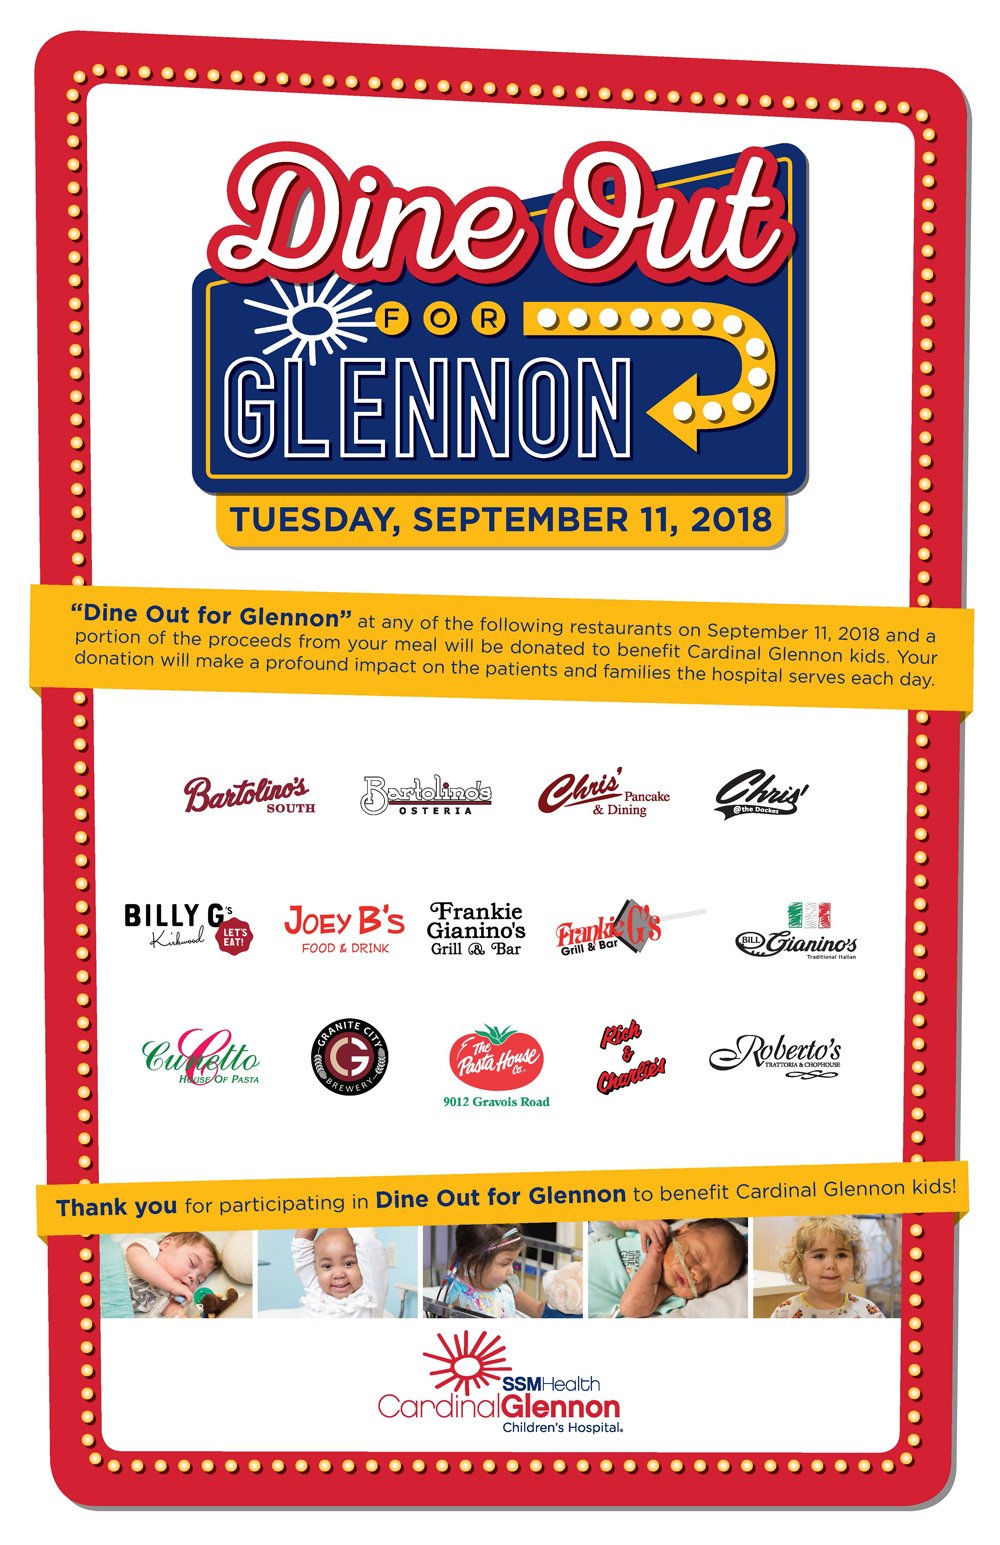 Dine Out for Glennon - Tuesday, September 11, 2018